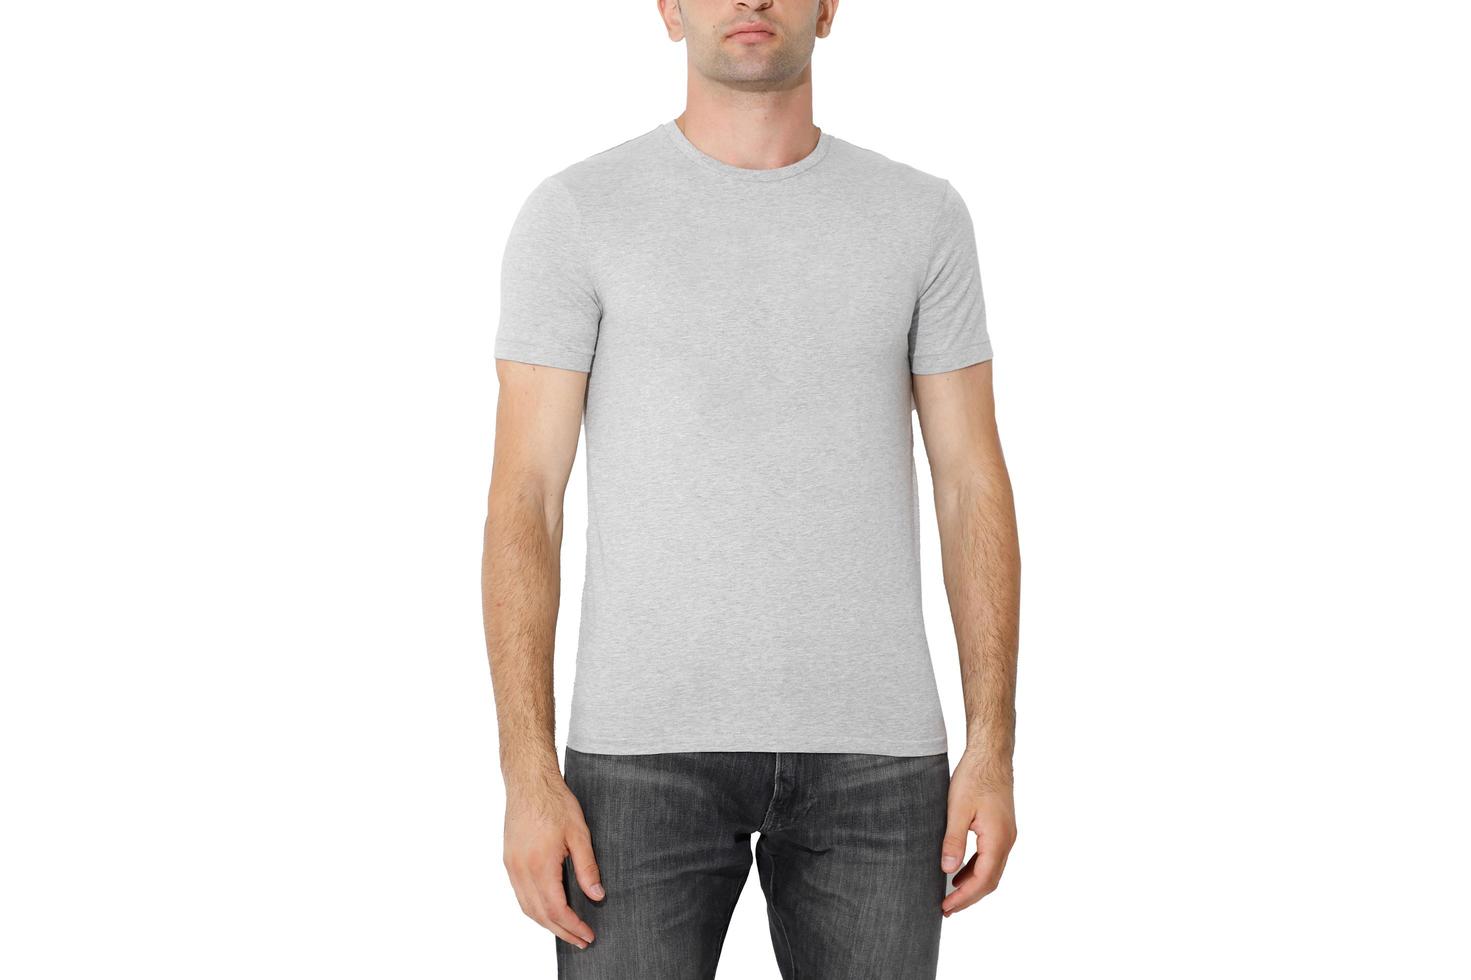 camiseta en un hombre, aislado en un fondo blanco, copia el espacio foto